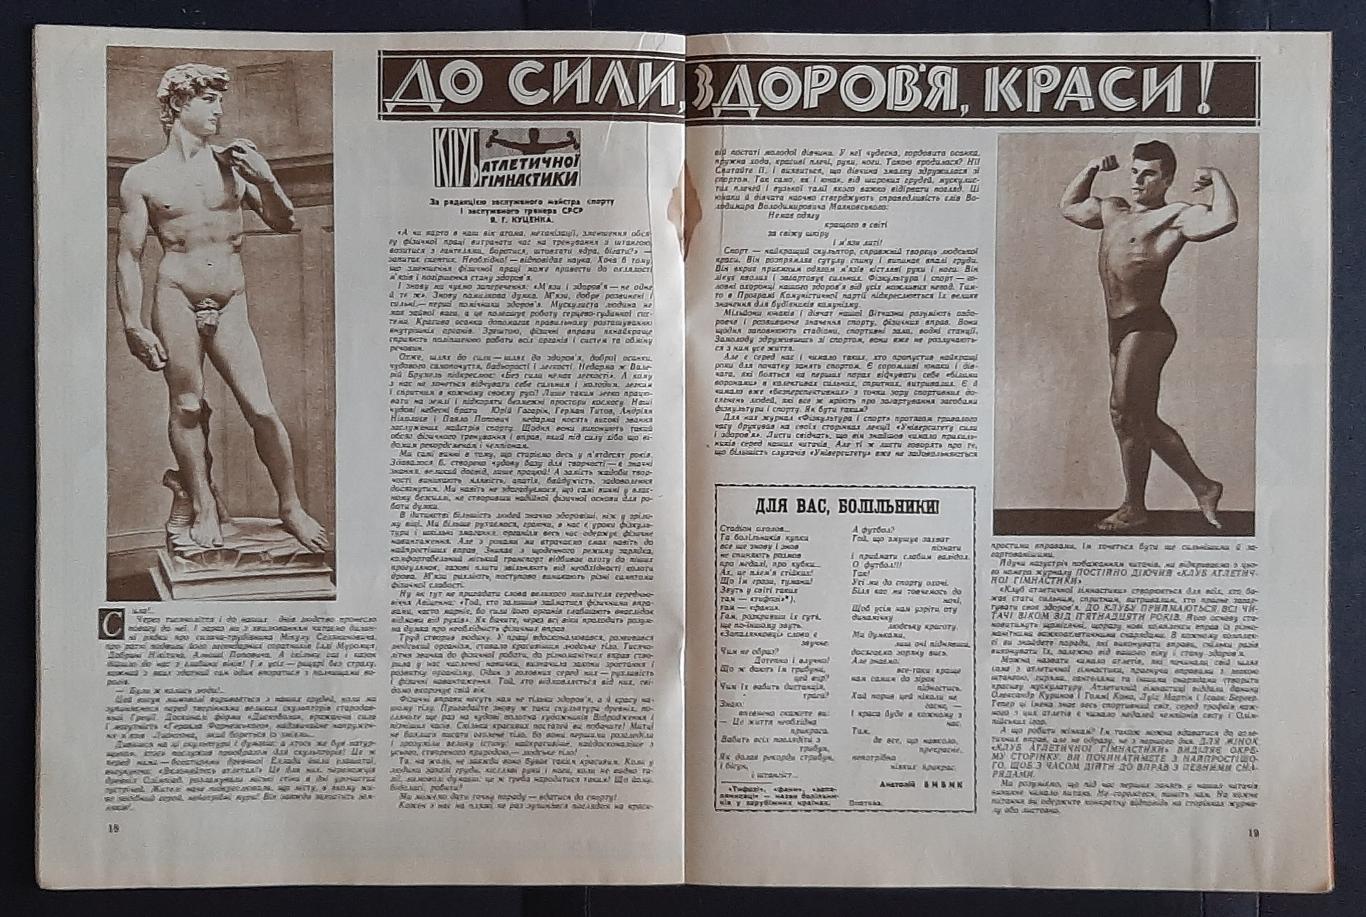 Журнал Фізкультура і спорт #11 1962 3